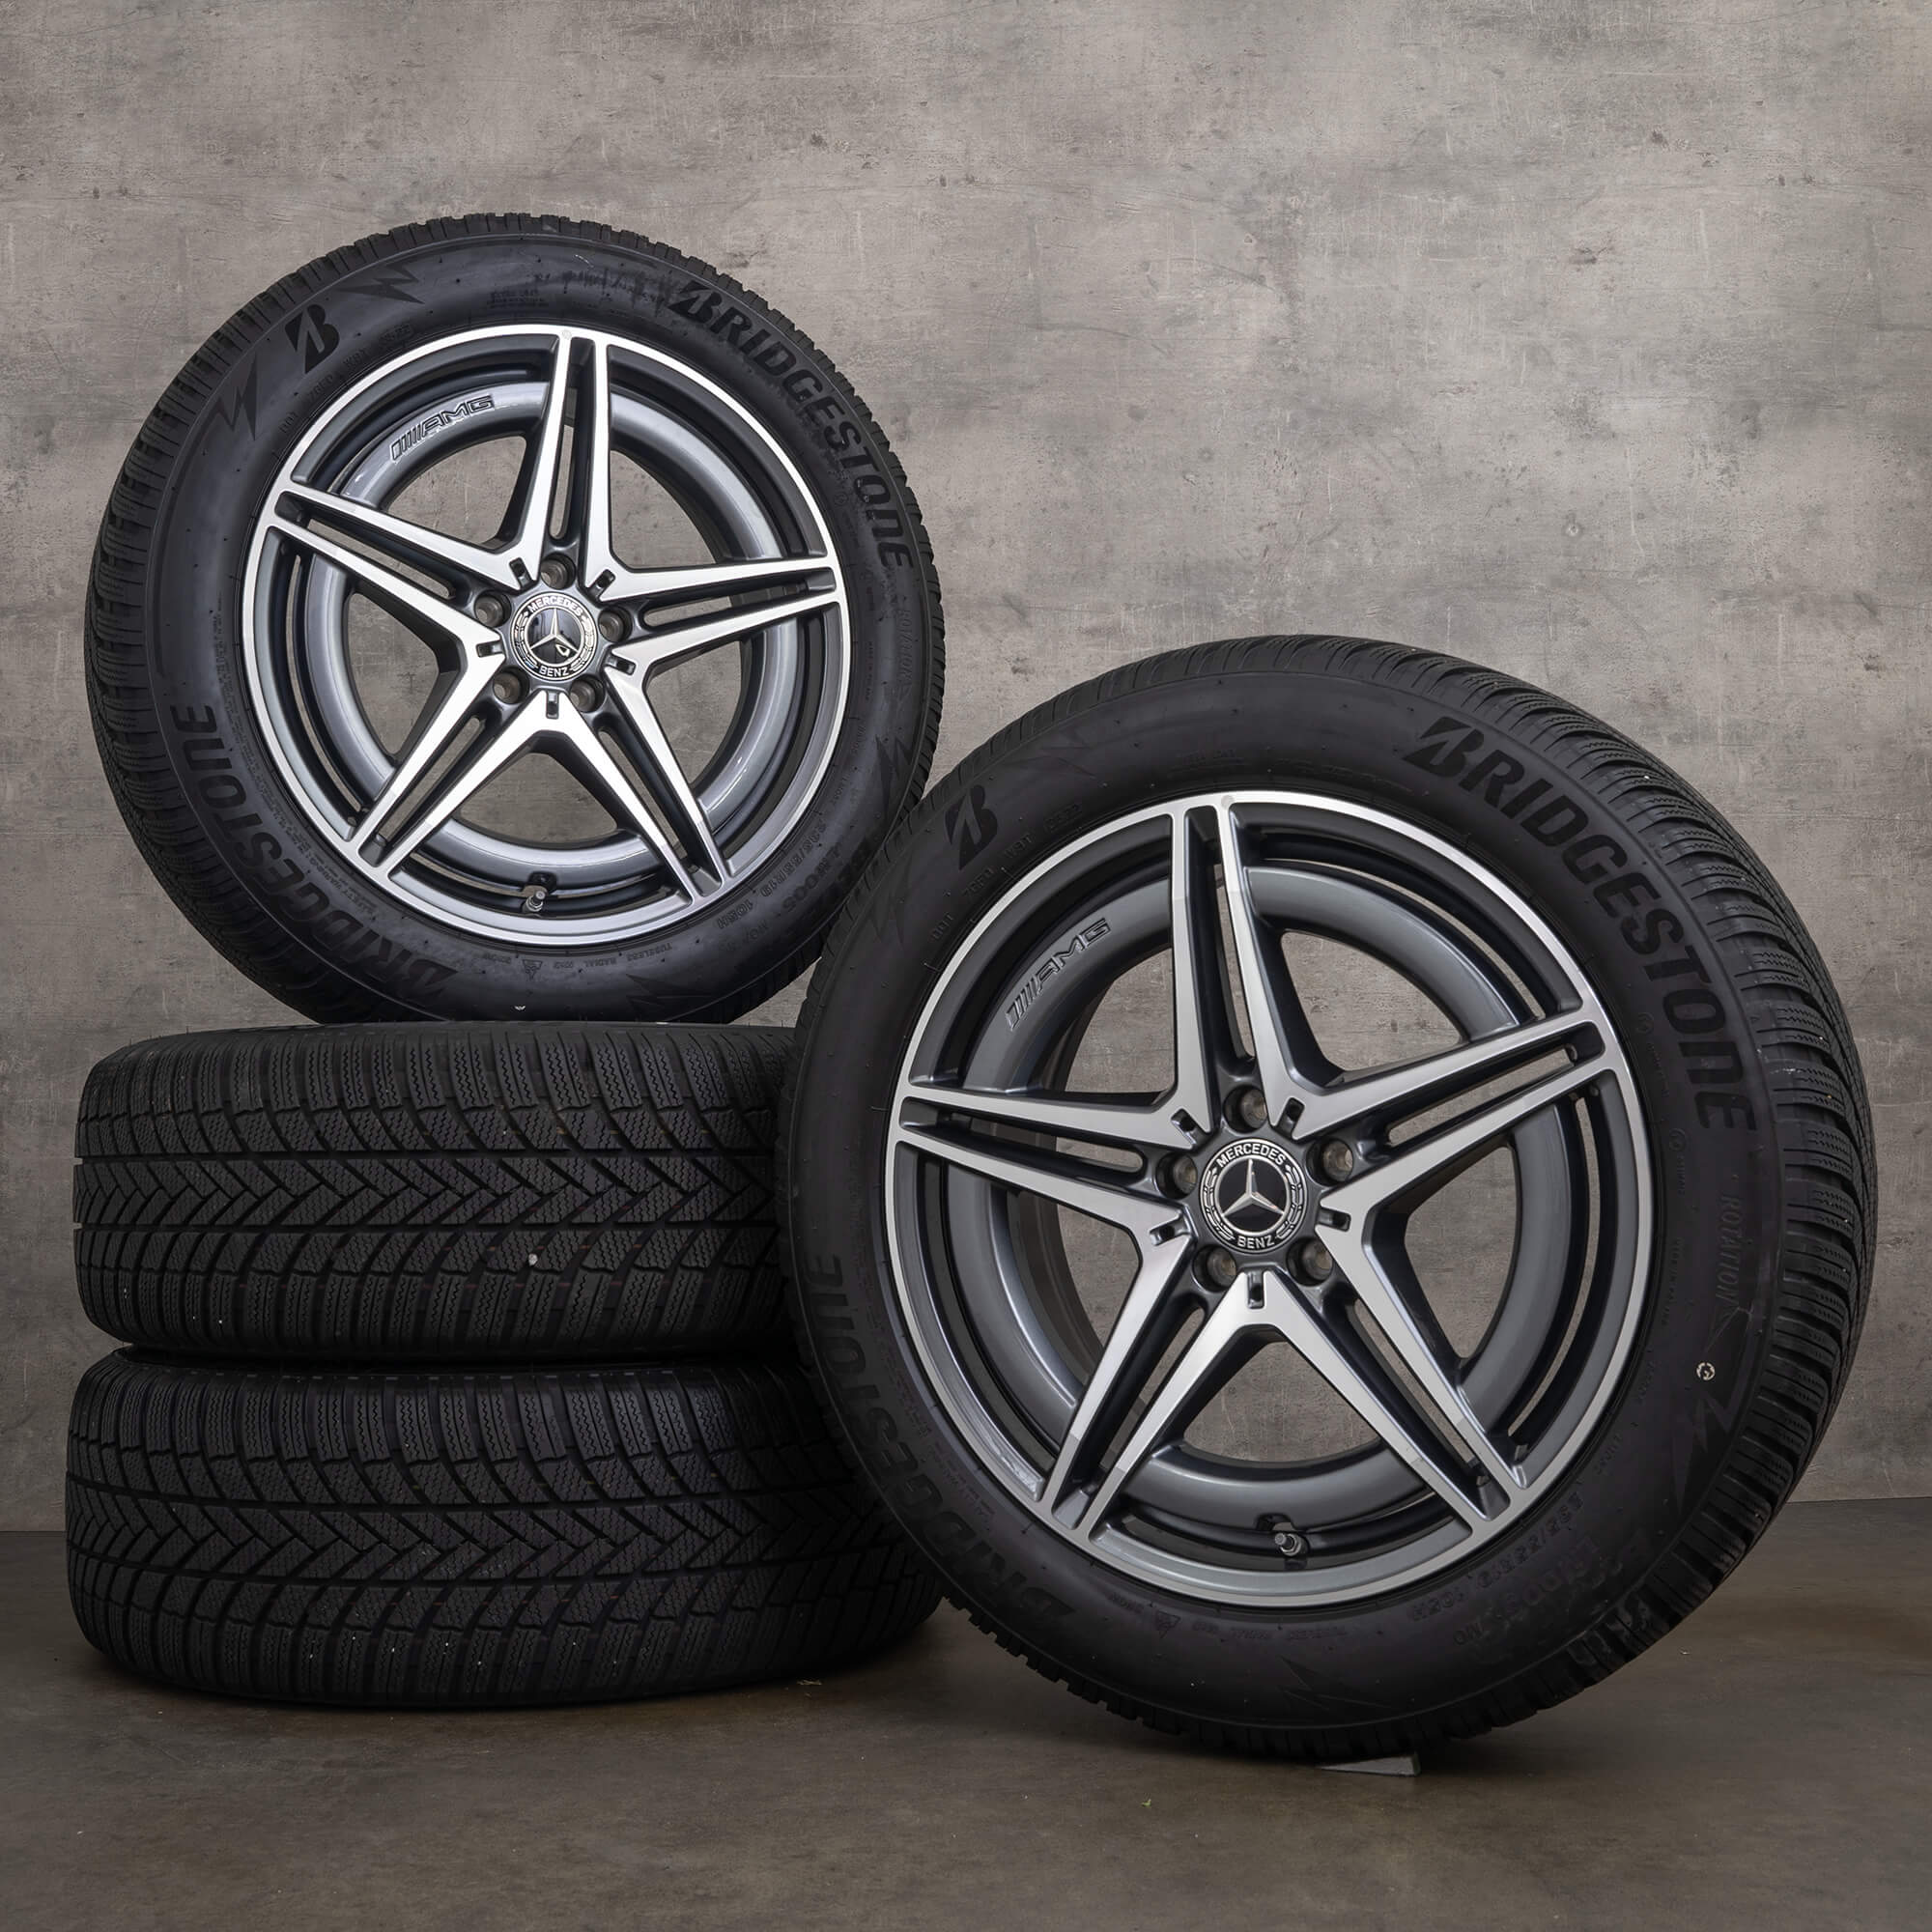 OEM AMG Mercedes EQC N293 19 inch winter tires rims A2934010700 himalaya grey